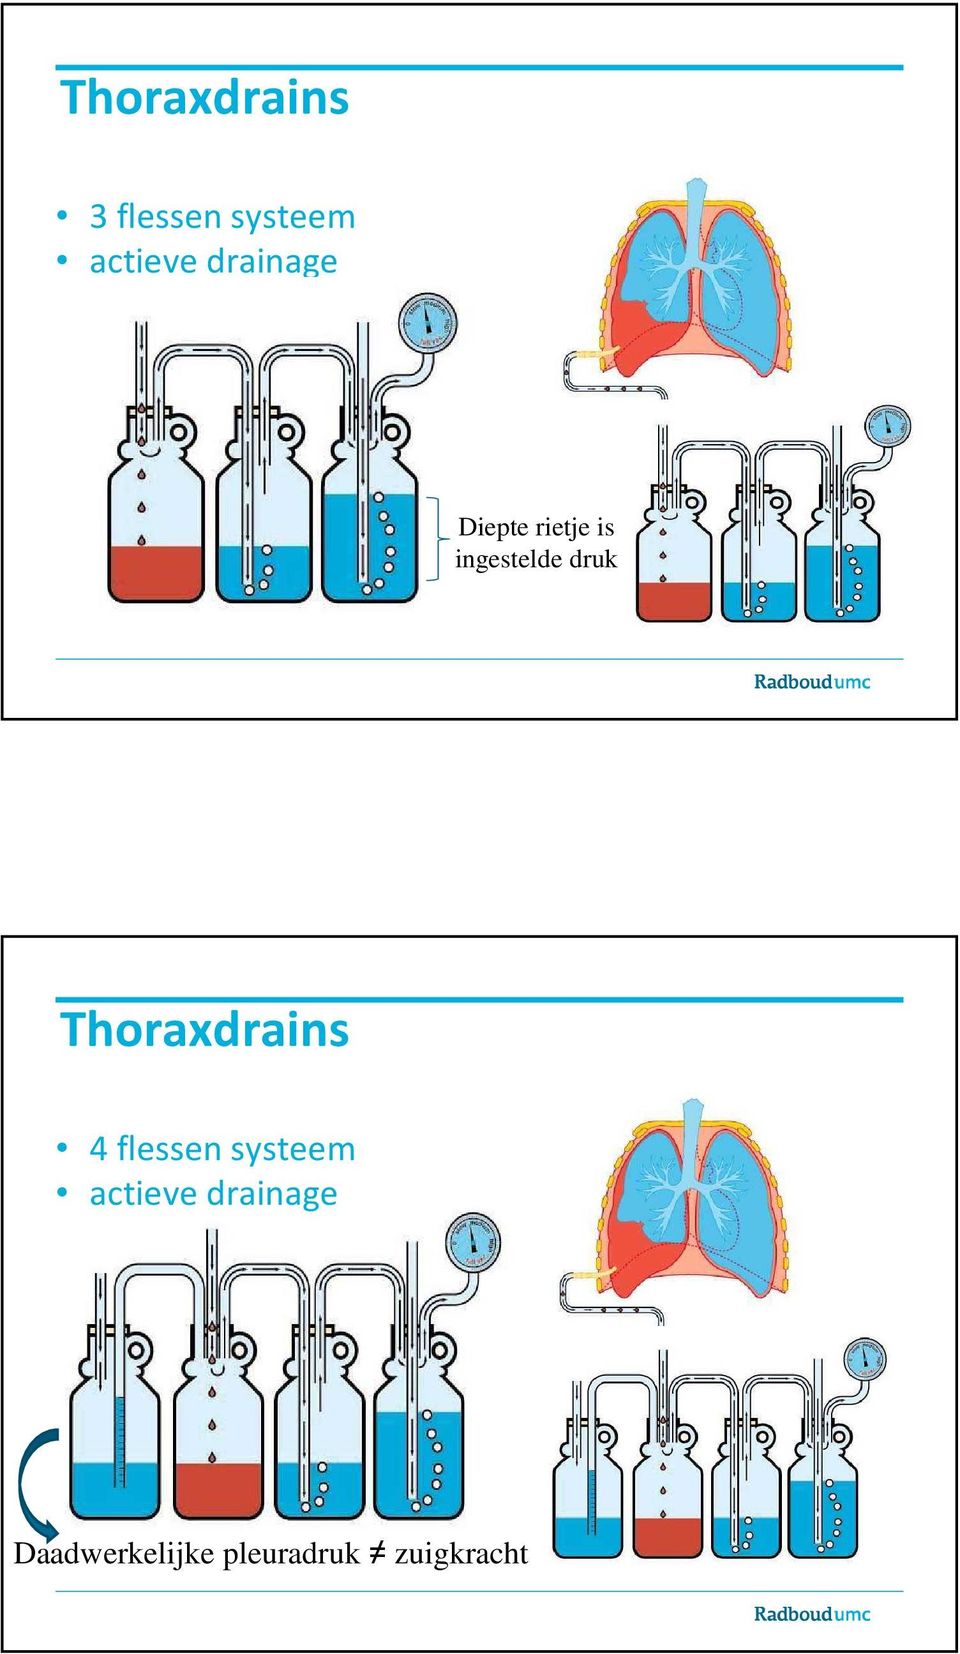 Thoraxdrains 4 flessen systeem actieve